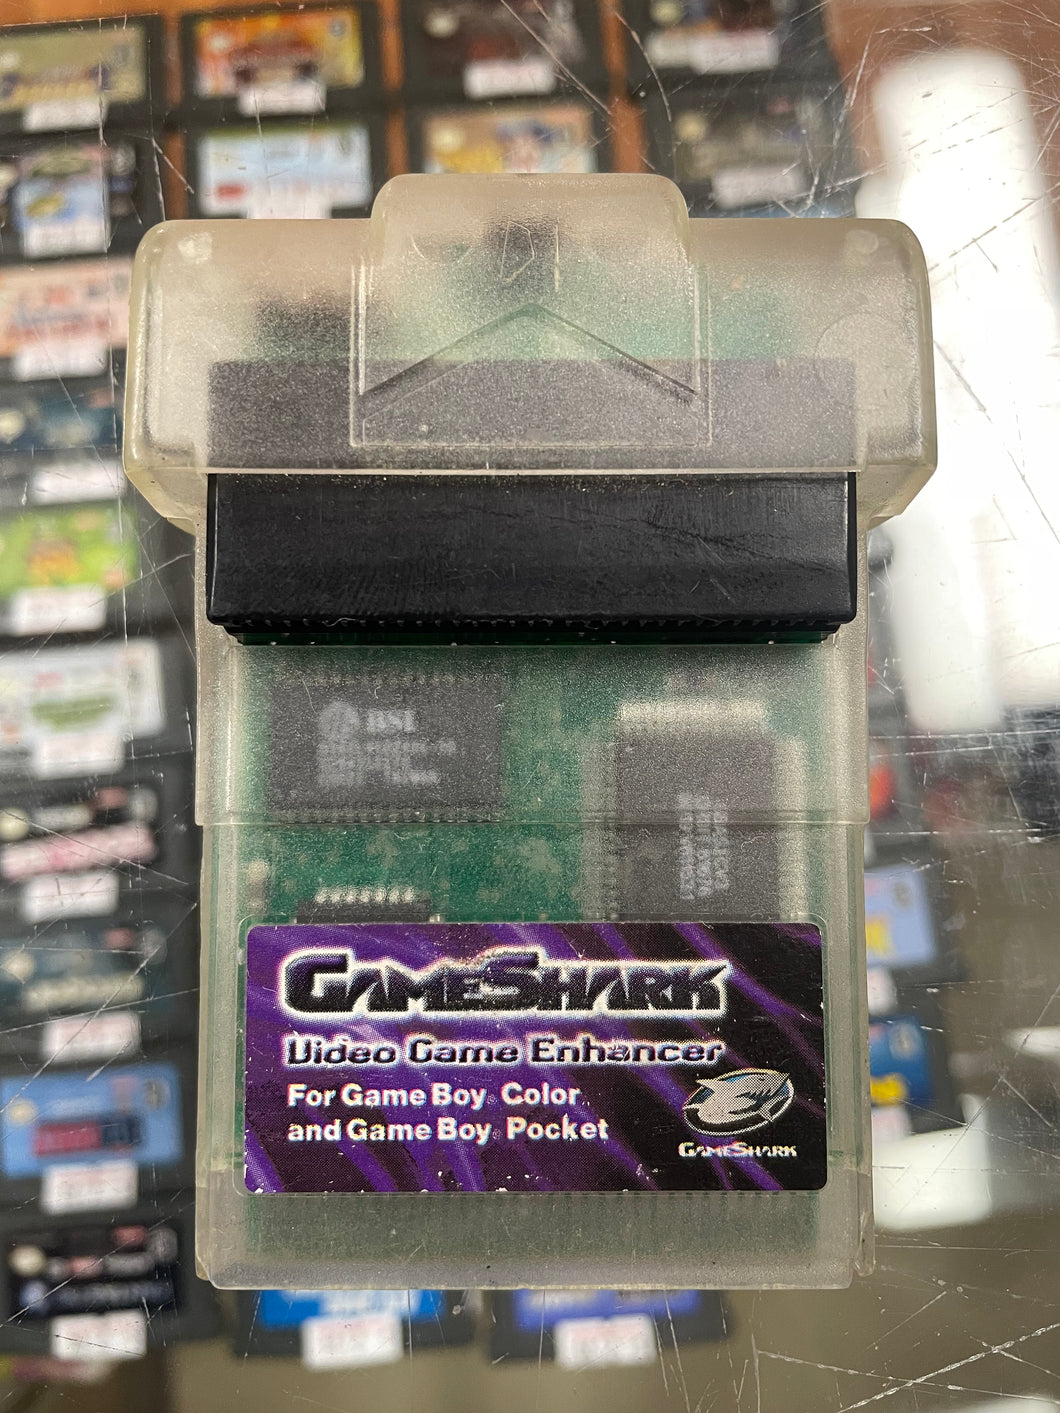 Gameshark for GameBoy Color & Gameboy Pocket